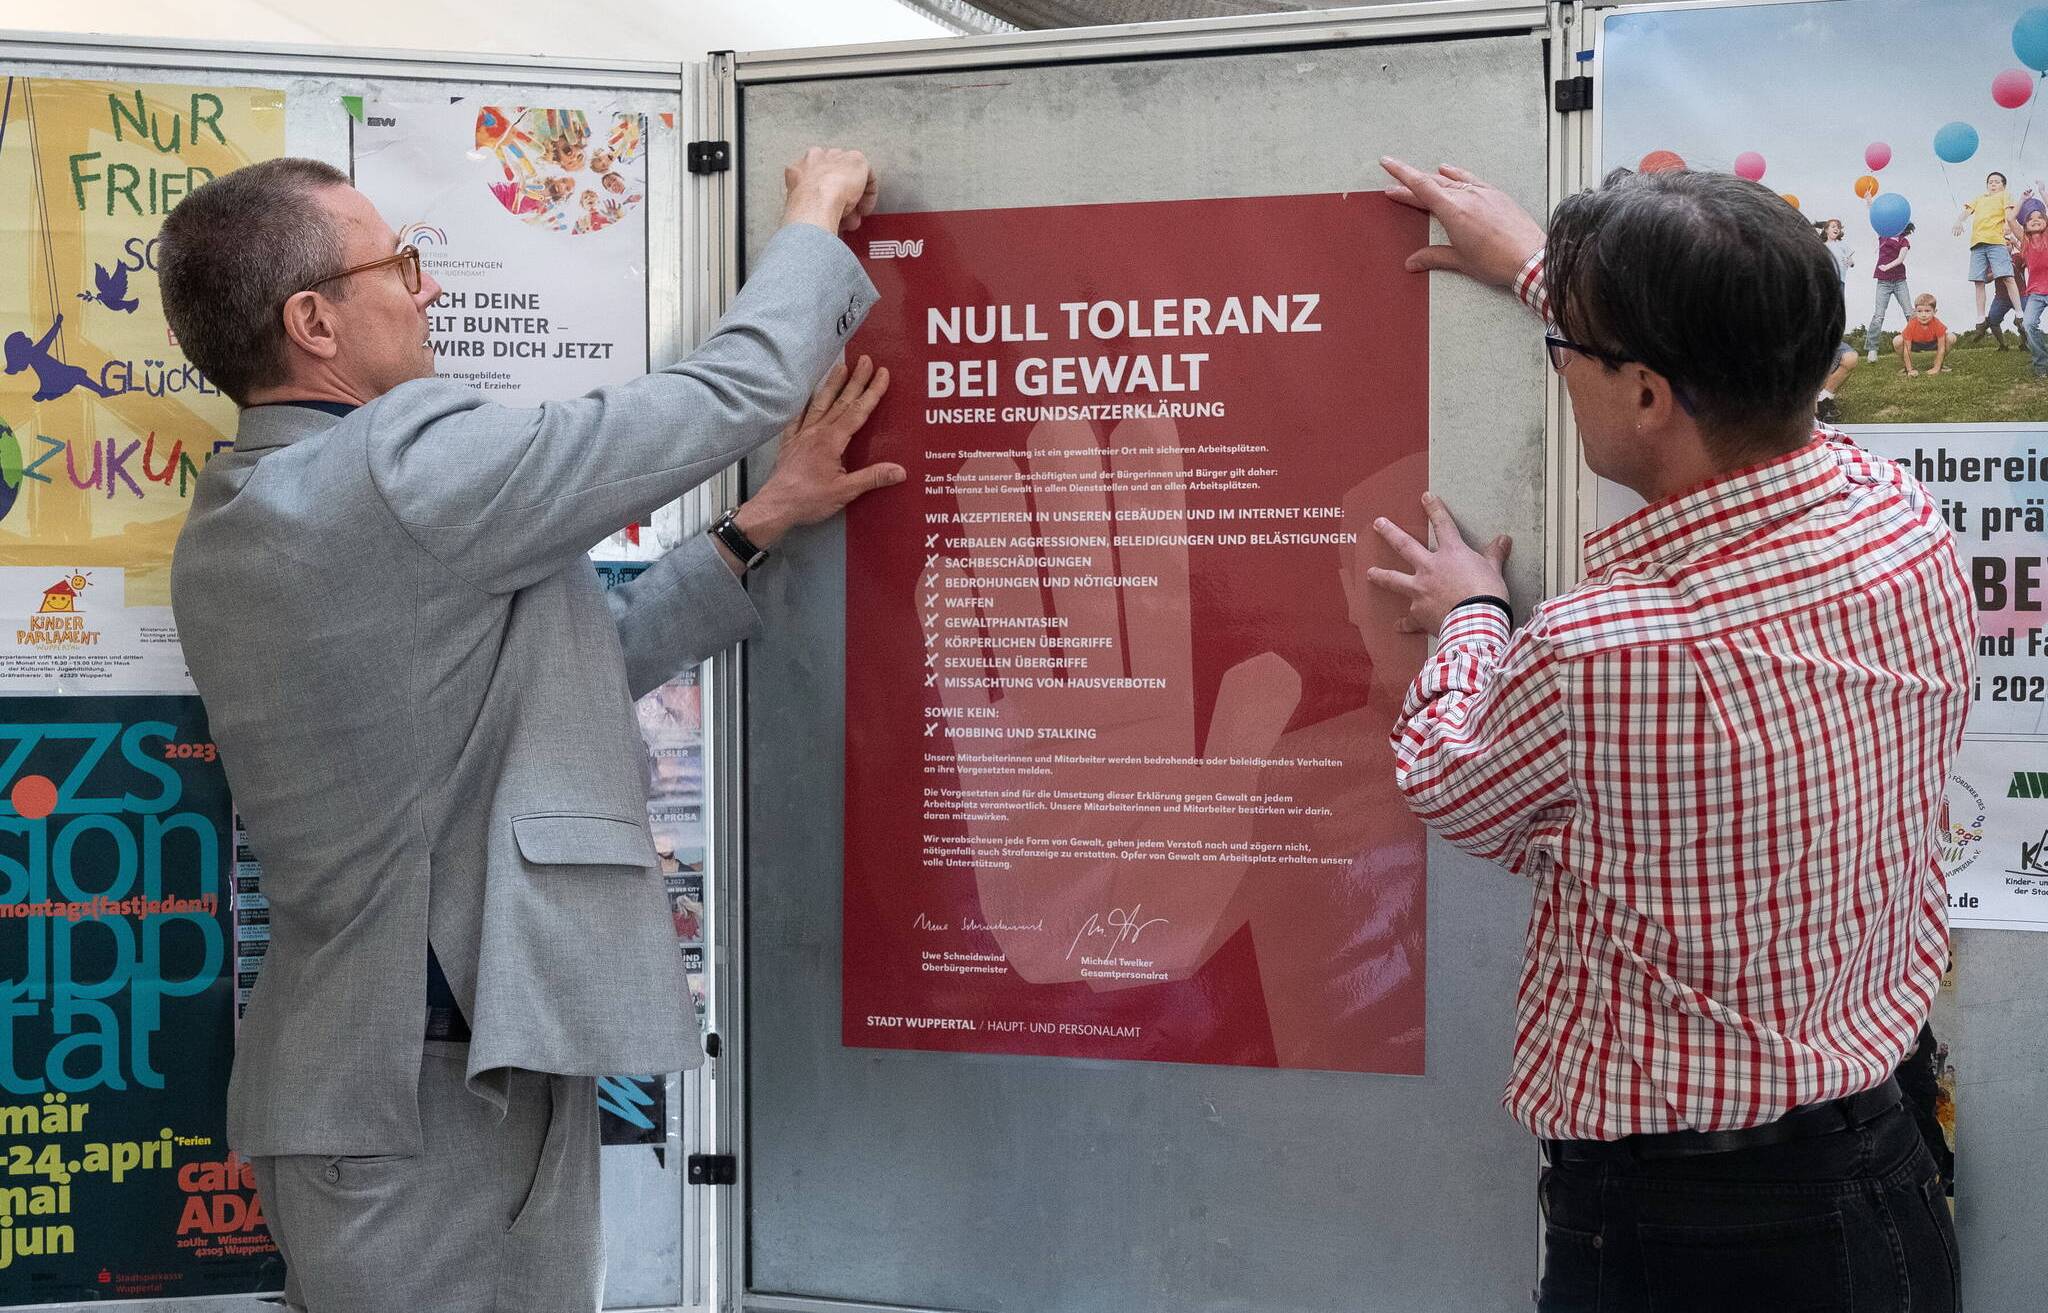 „Null Toleranz bei Gewalt“ heißt die Devise